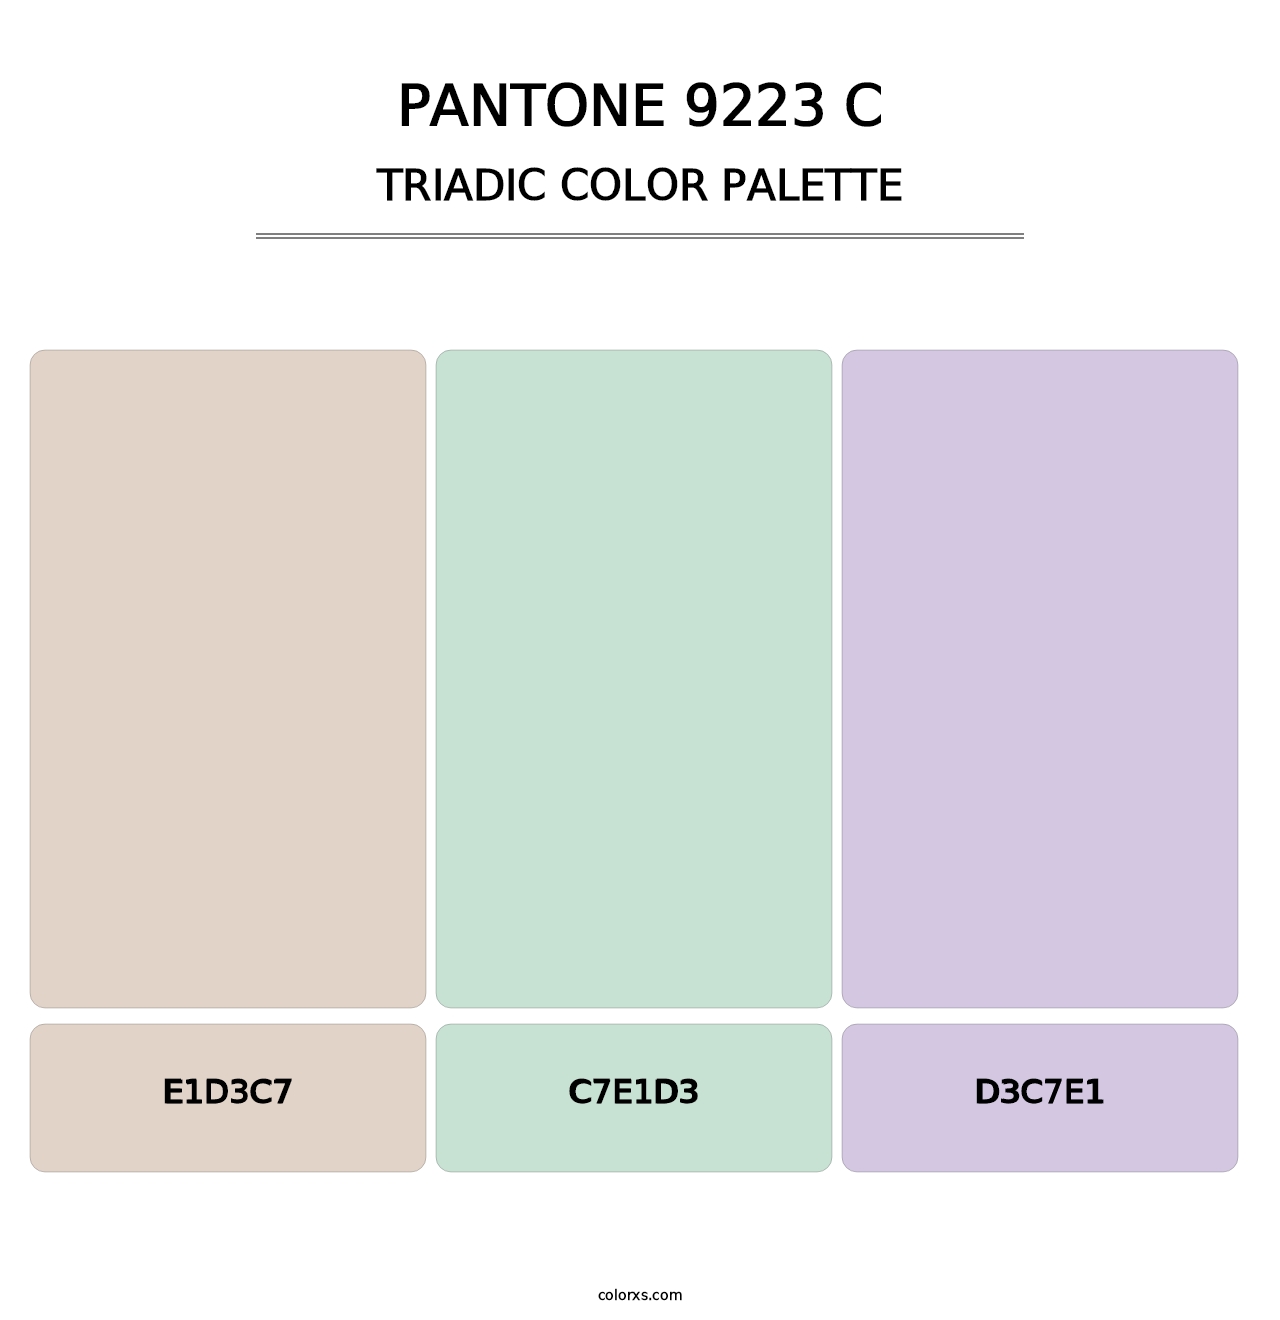 PANTONE 9223 C - Triadic Color Palette